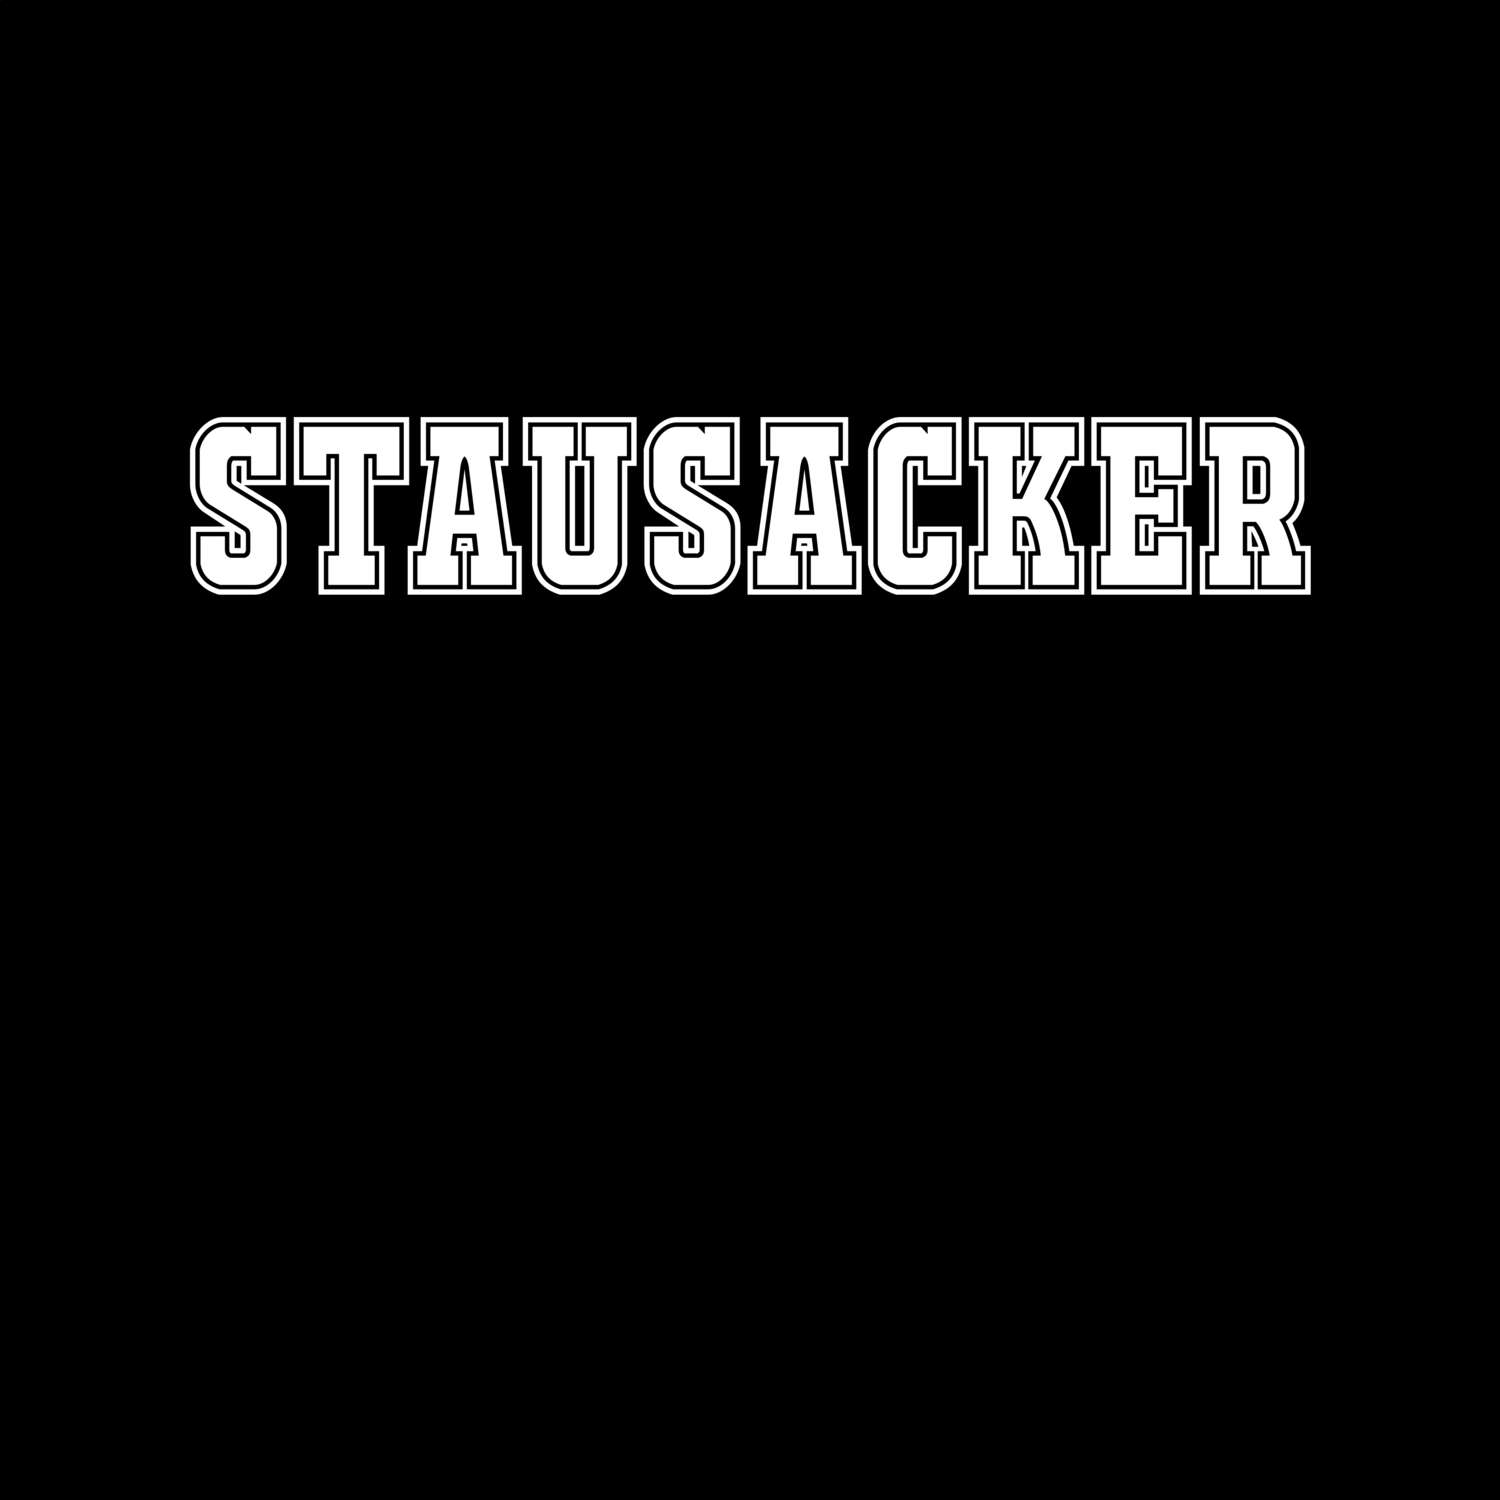 Stausacker T-Shirt »Classic«